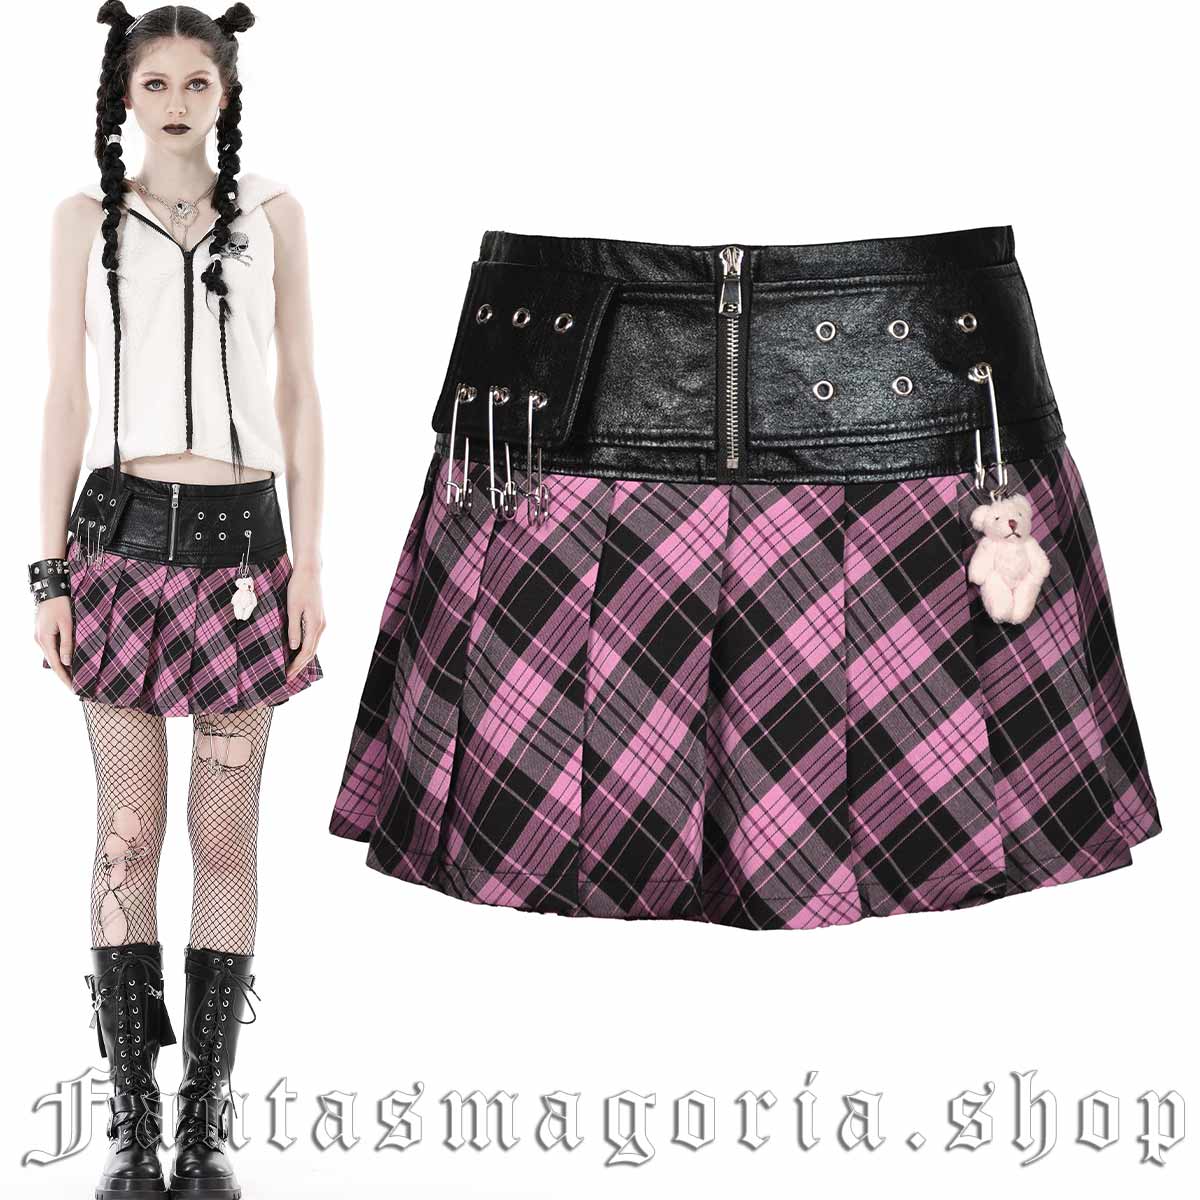 Pink Anarchy Skirt - Dark in Love | Fantasmagoria.shop